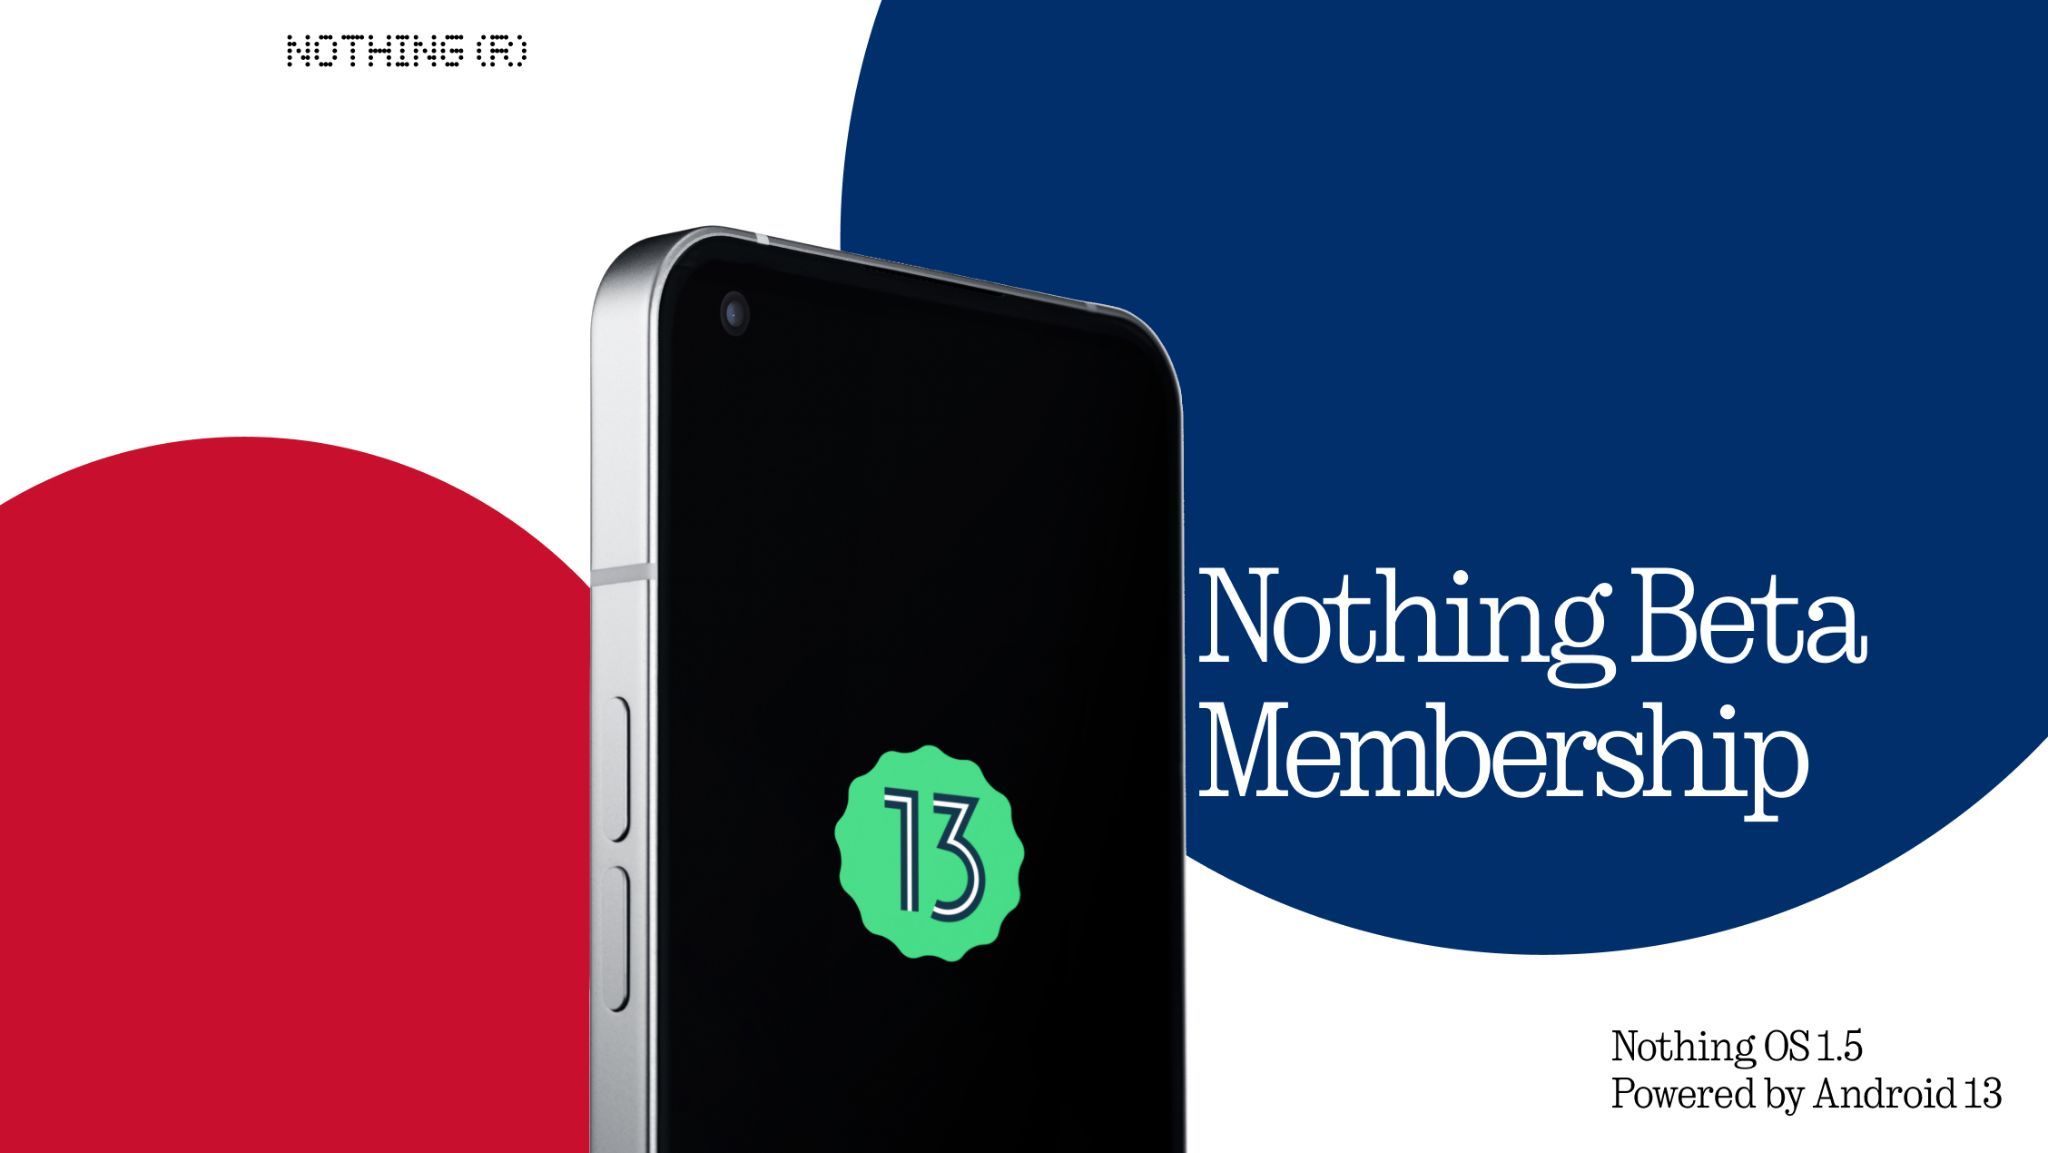 Nothing Beta Membership